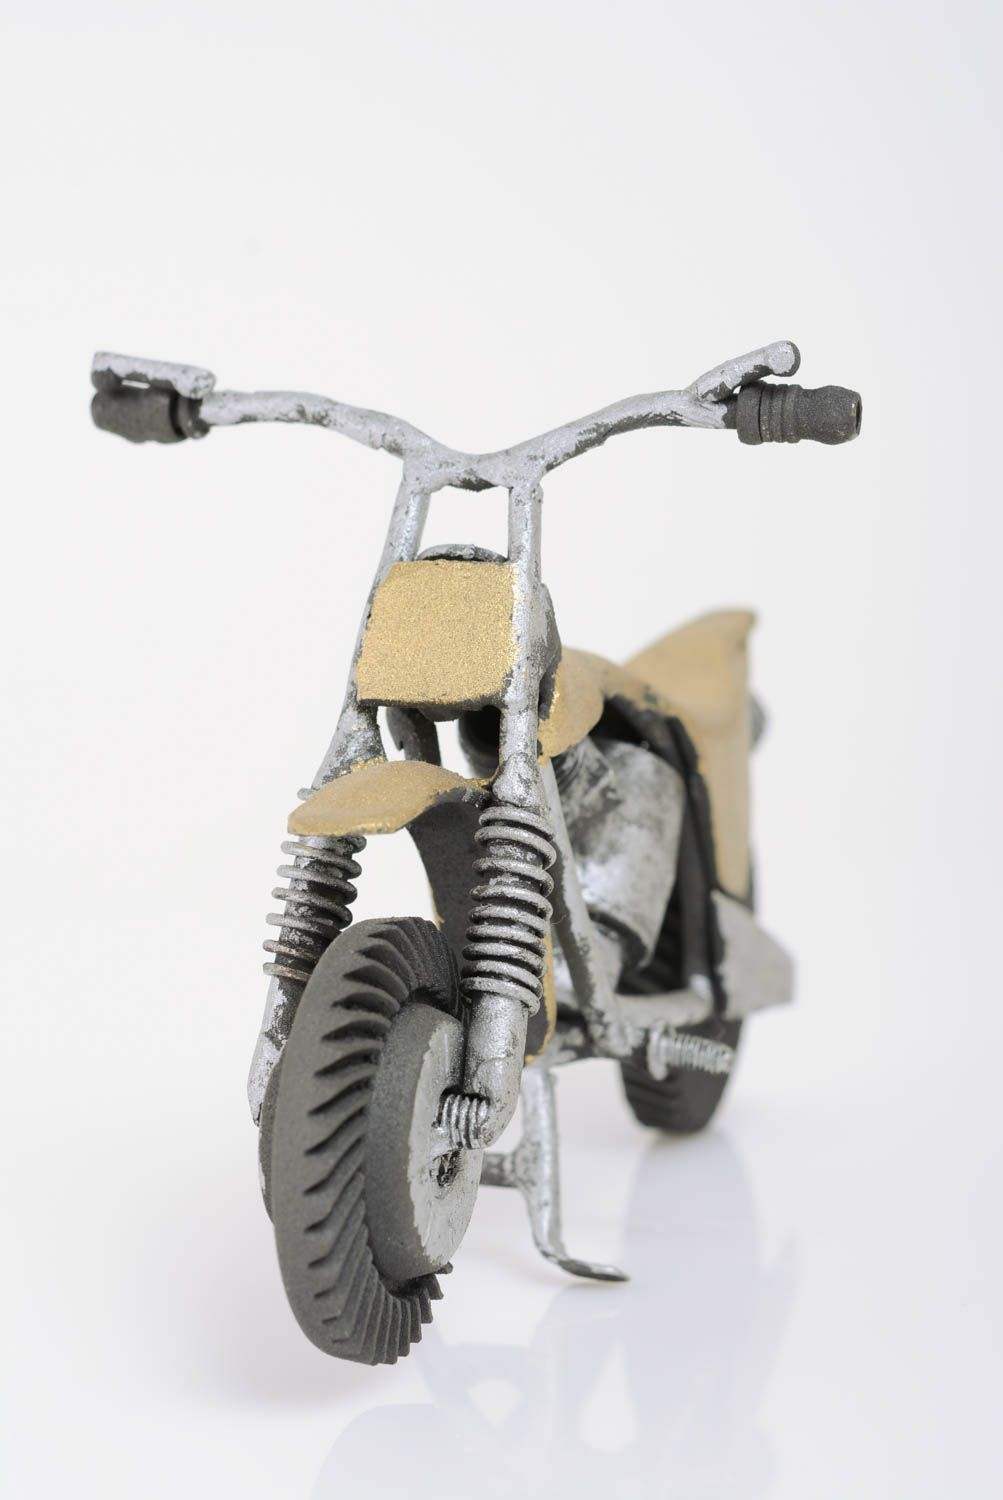 Металлическая статуэтка мотоцикла ручной работы в стиле техно арт красивая оригинальная фото 3